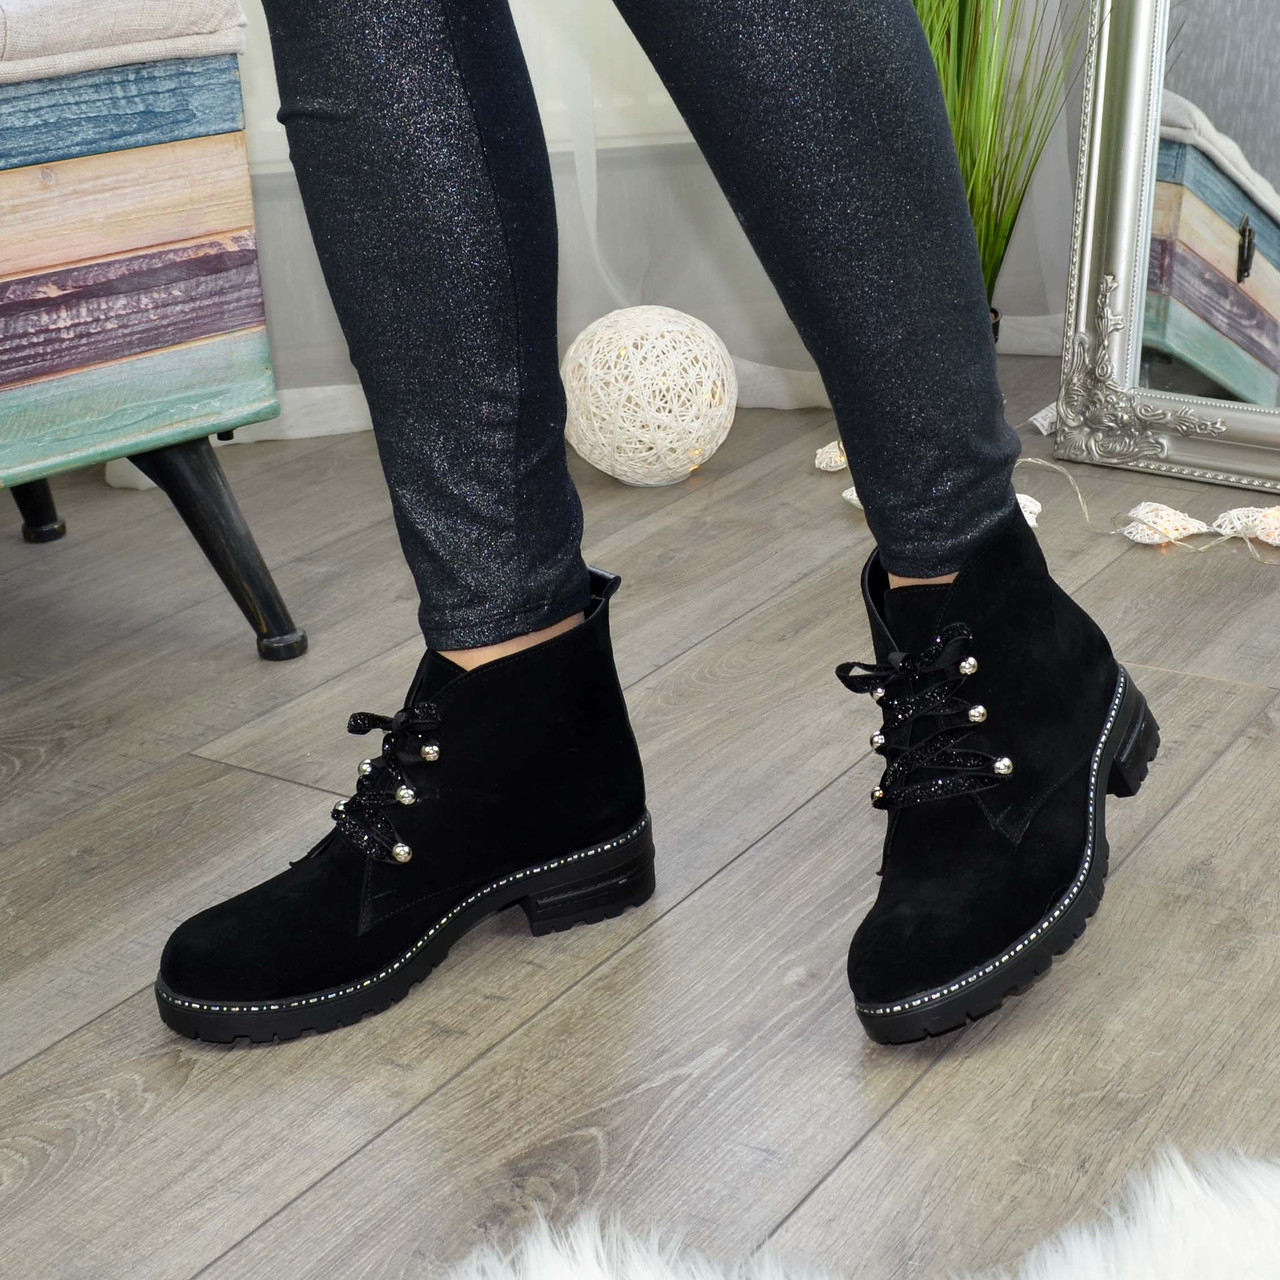 

Полуботинки женские замшевые на шнуровке, цвет черный. 39 размер